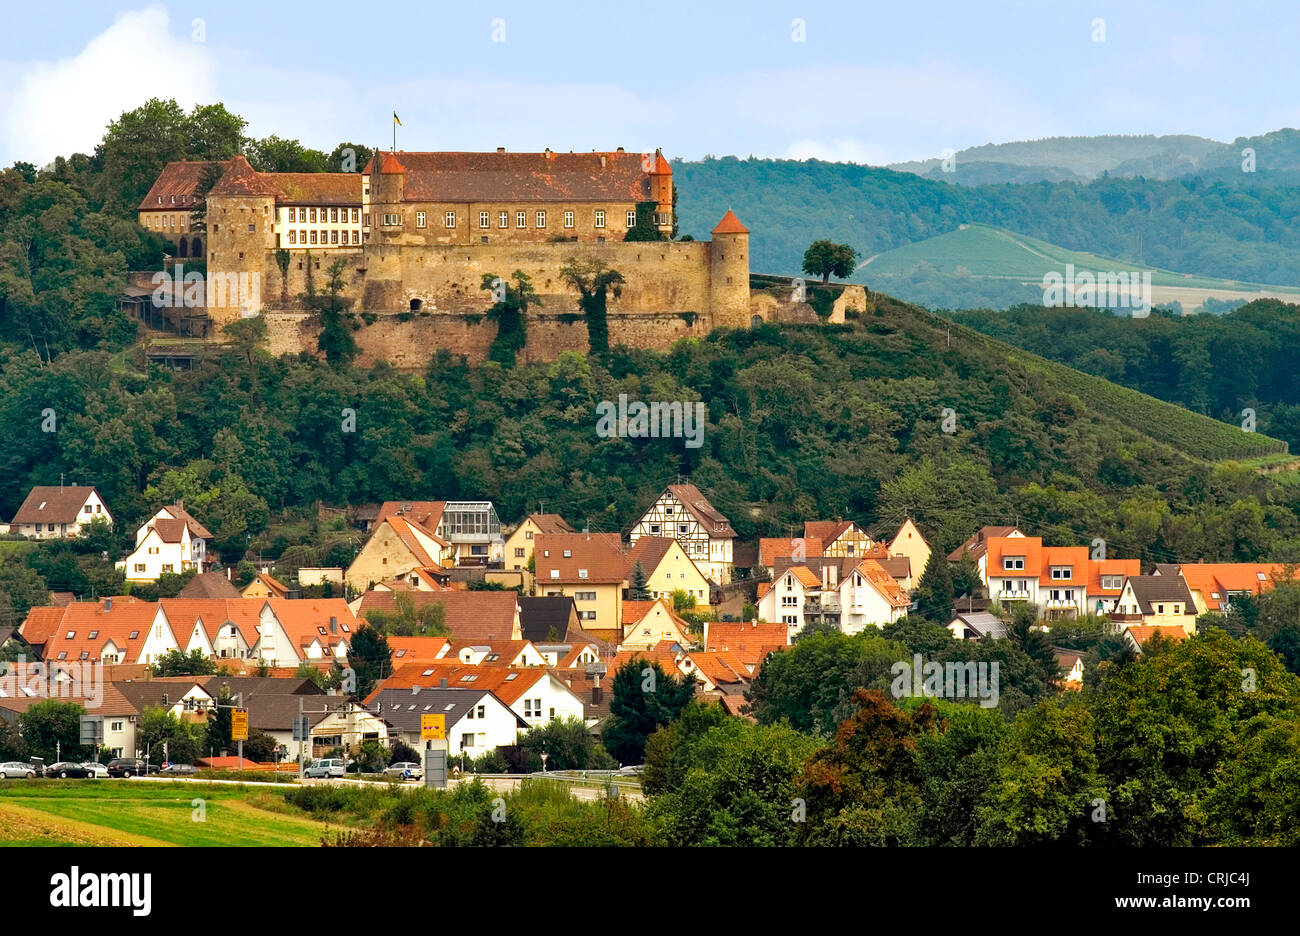 Schloss Burg Stettenfels, un château Renaissance à Untergruppenbach, Allemagne, Bade-Wurtemberg Banque D'Images